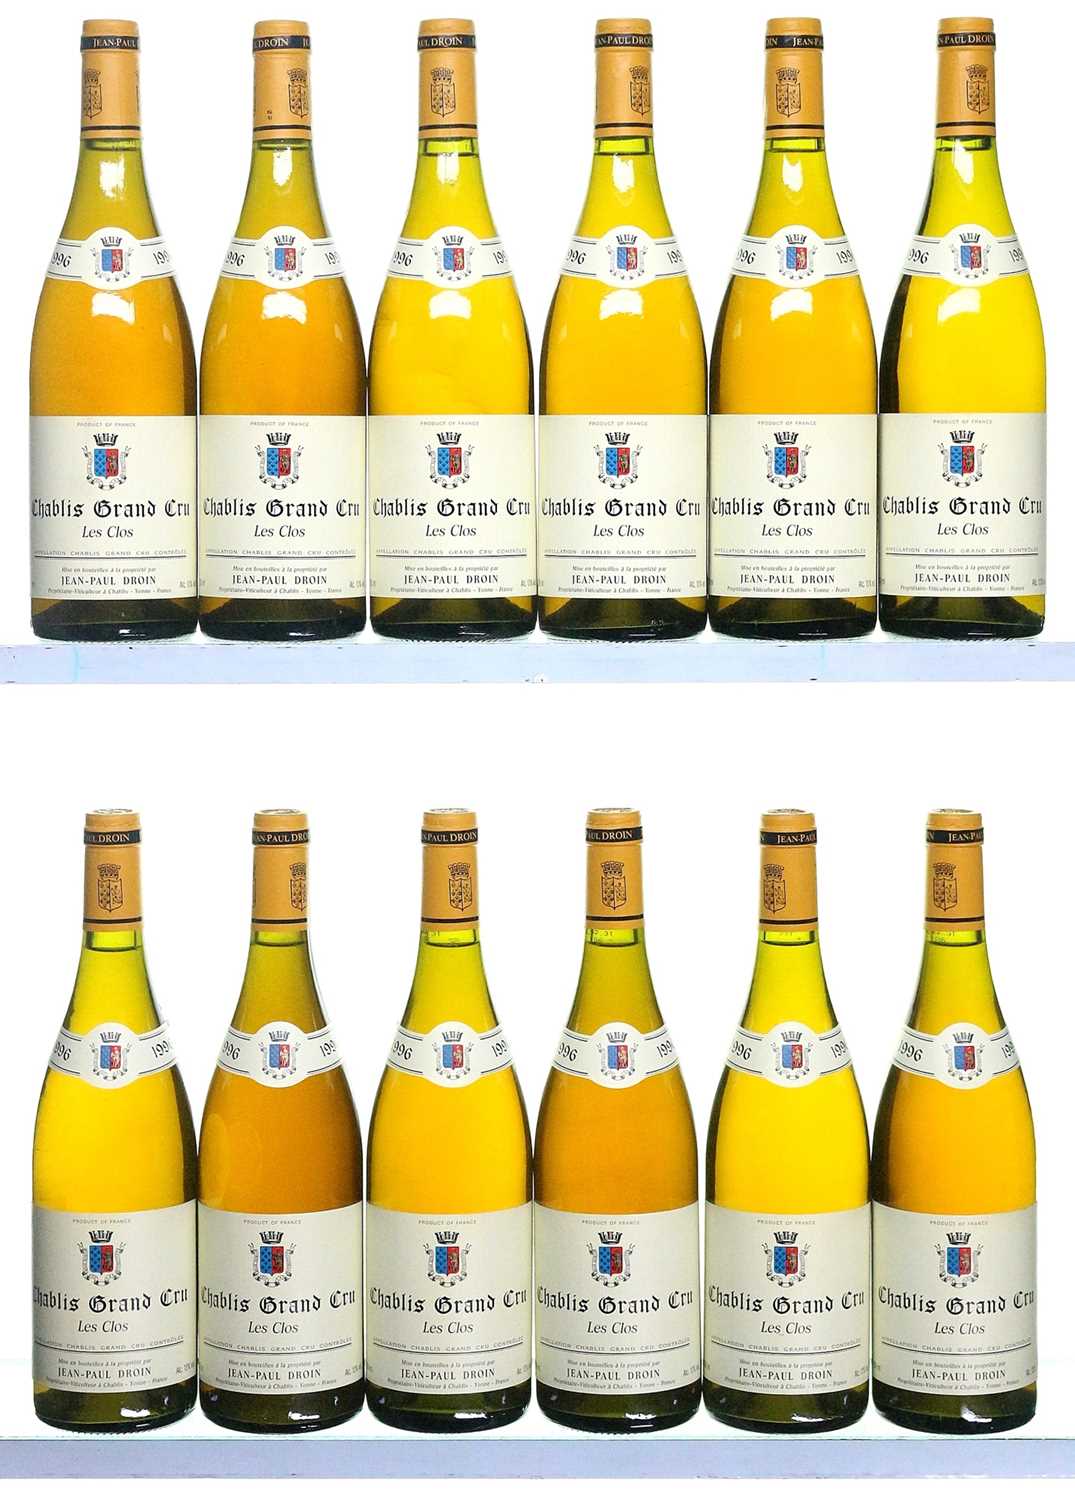 Lot 155 - 12 bottles Chablis Les Clos Droin